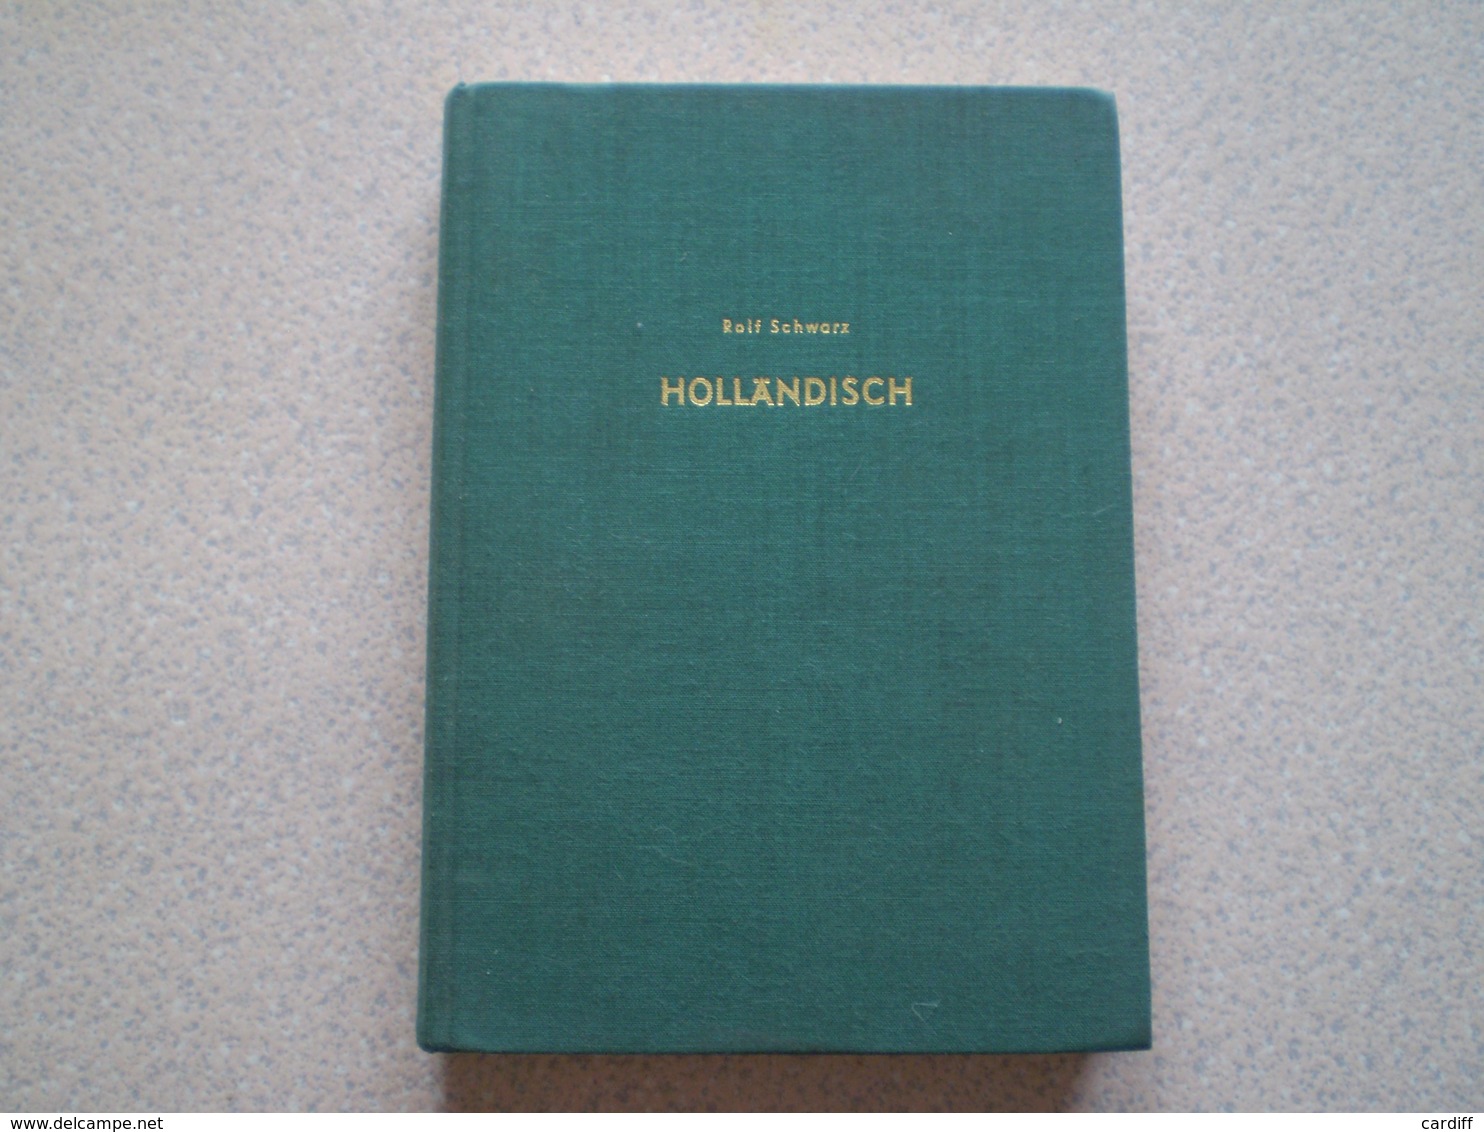 Jeu D' Echecs; Schach. Rolf Schwarz, Handbuch Der Schach Eroffnungen; Band 12 - Non Classés